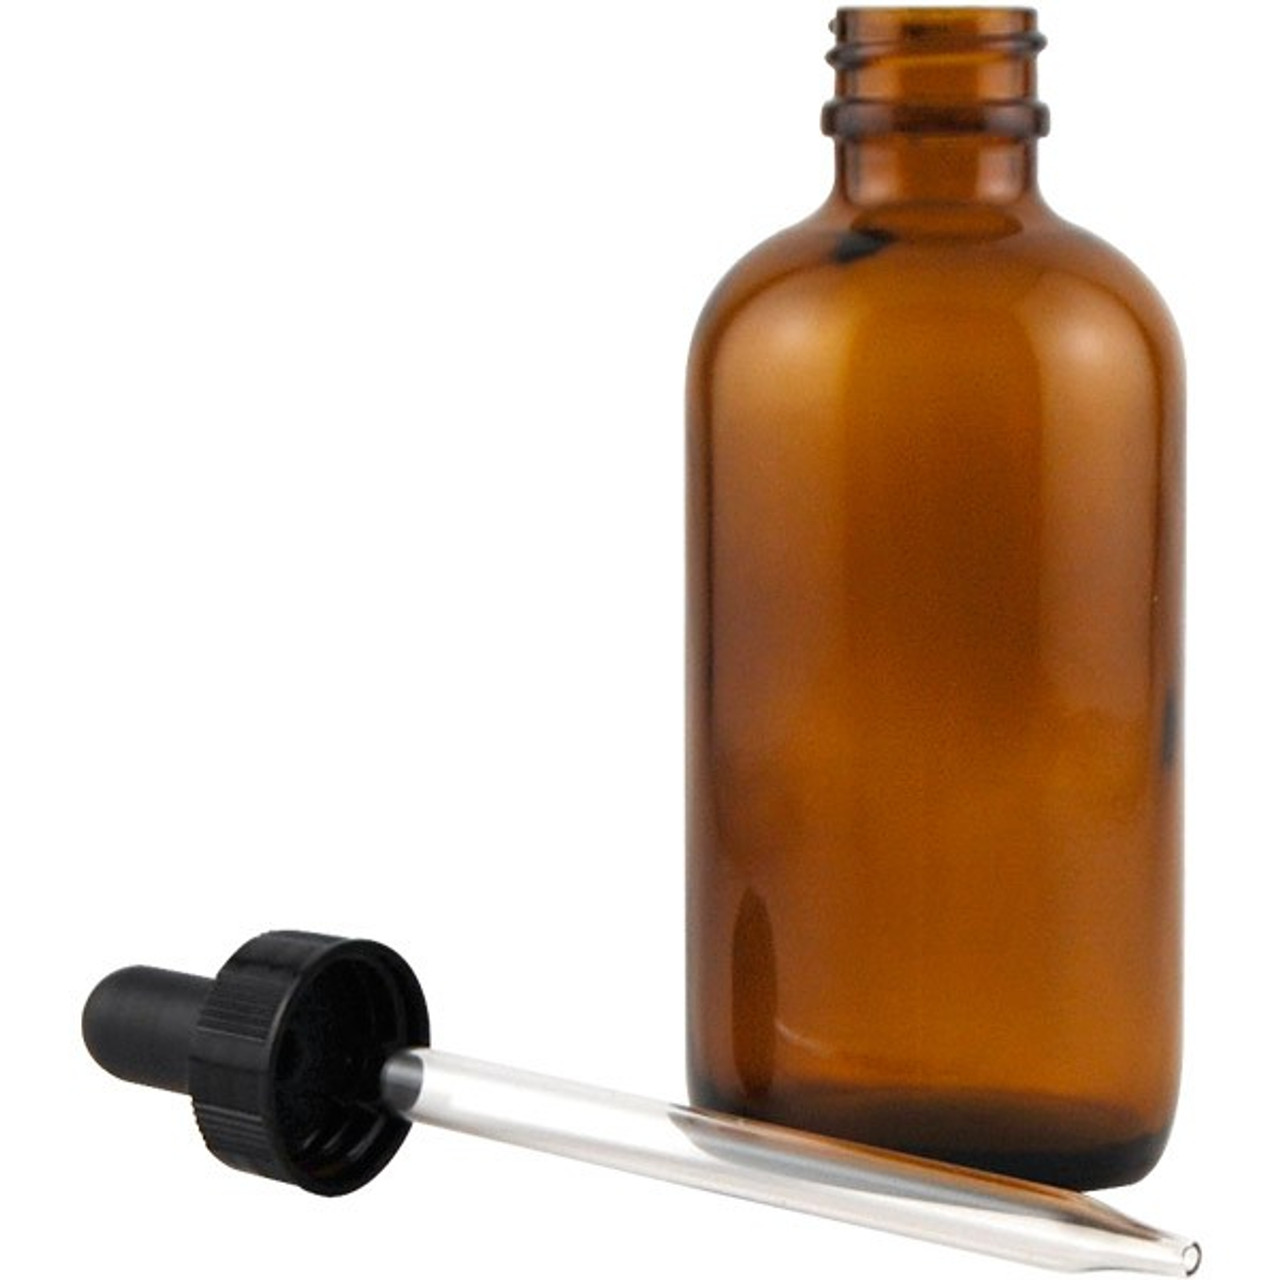 Dropper Bottle in Amber Glass